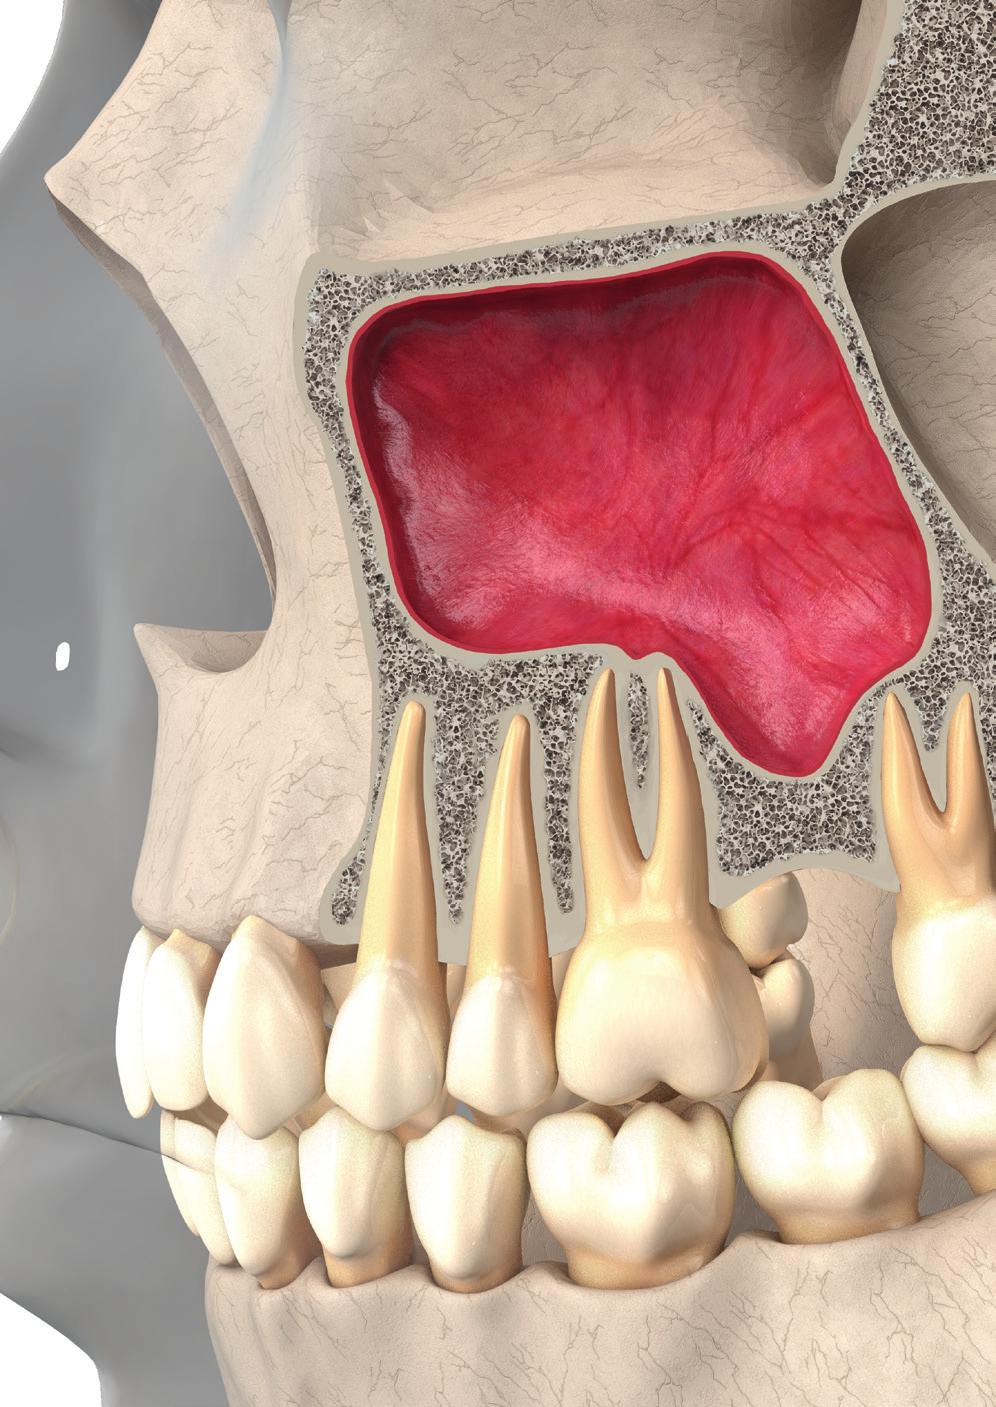 Pneumatização secundária Ocorre após a extração dentária posterior em adultos e leva a um aumento do seio maxilar às custas do rebordo